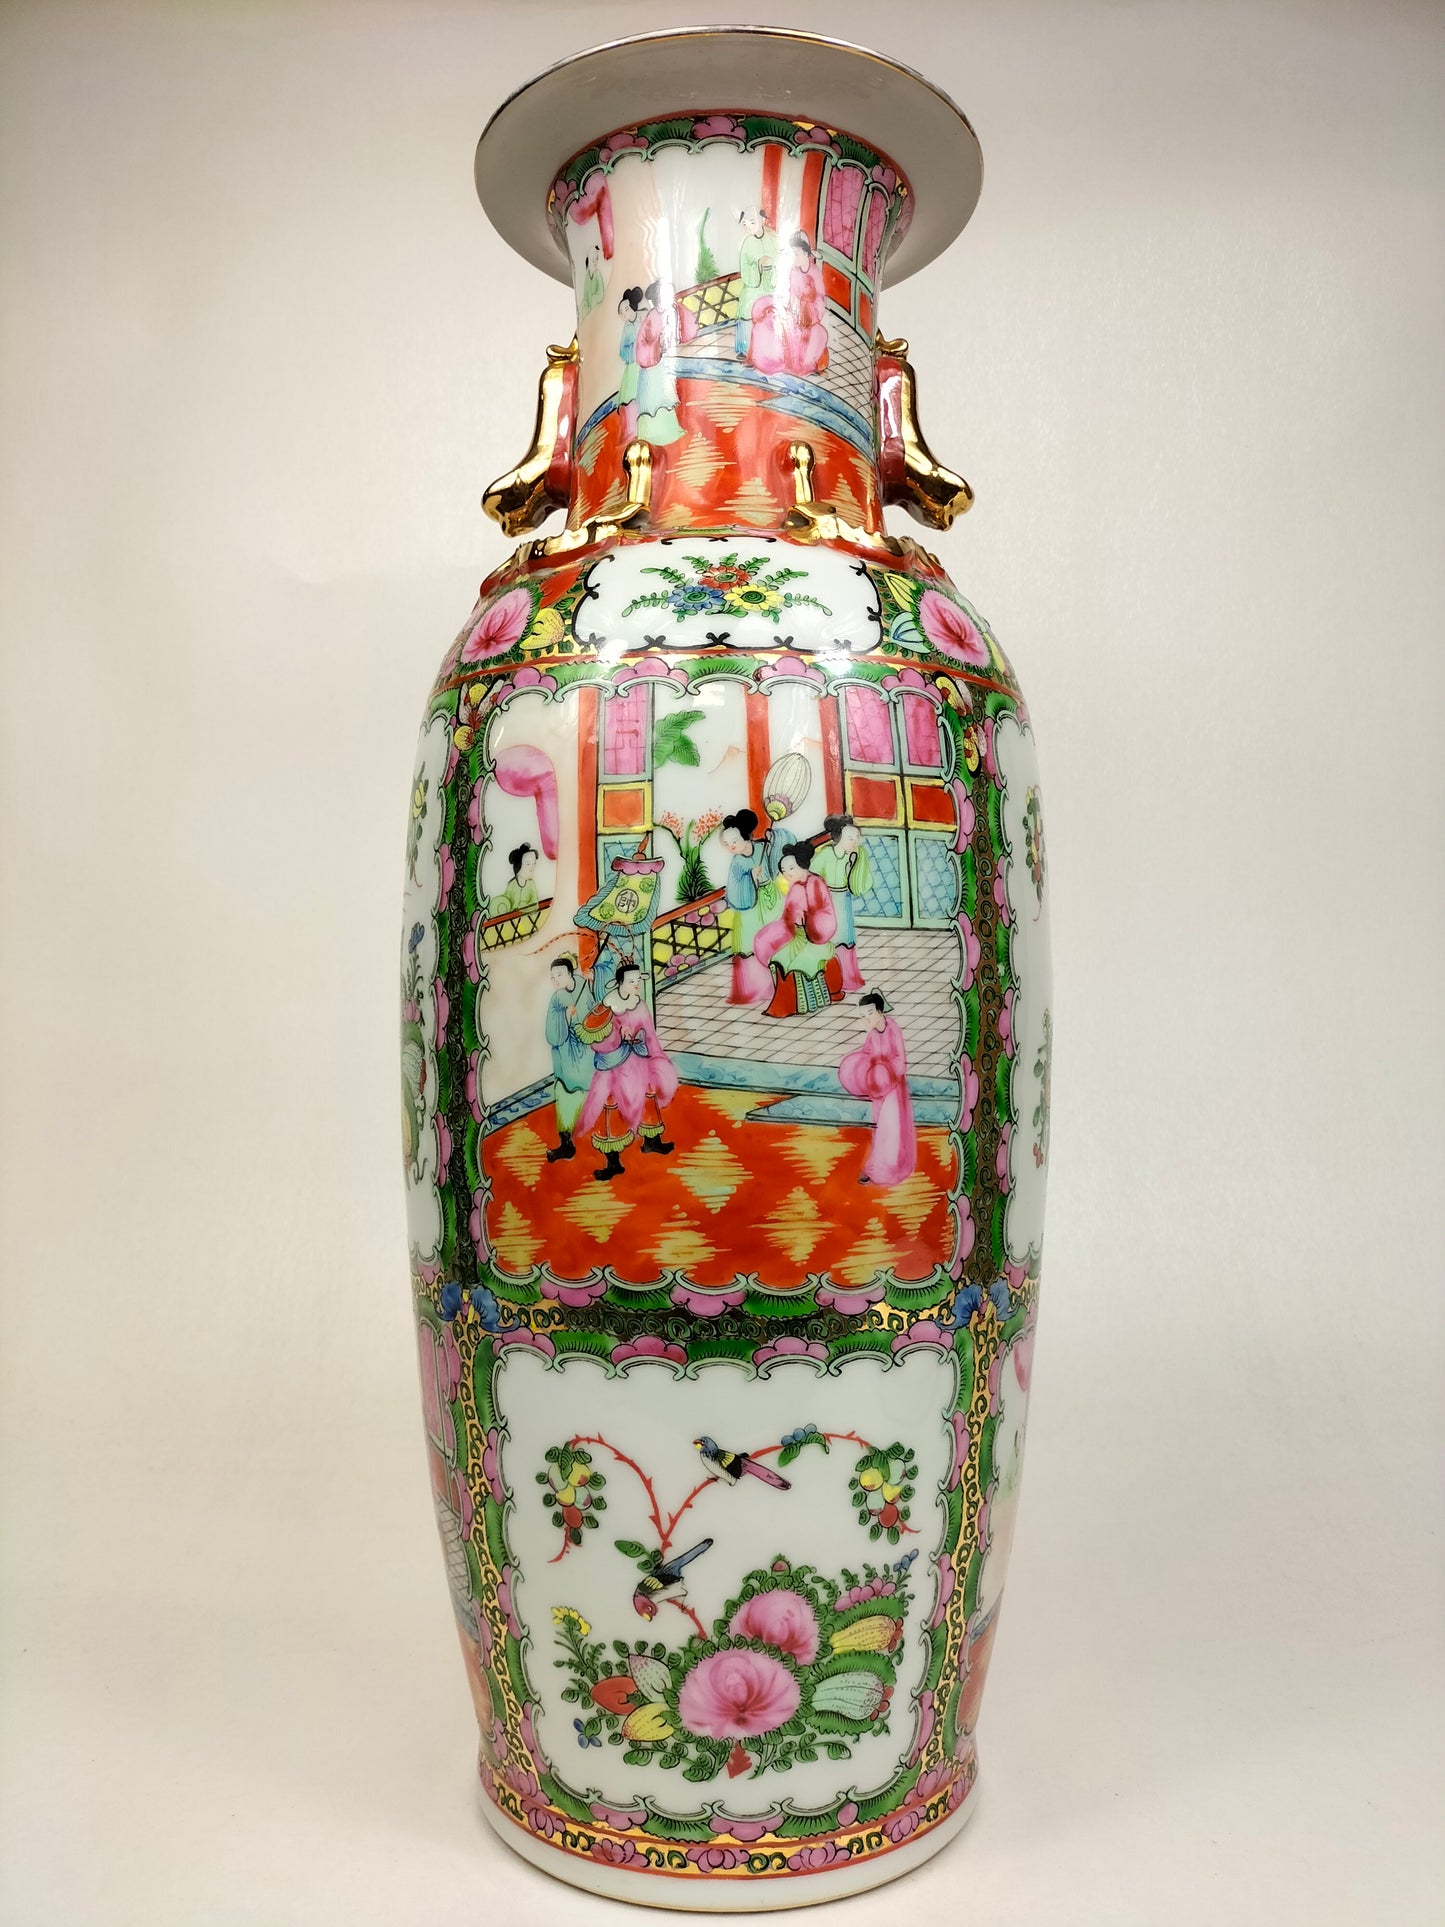 Grande vaso medalhão de rosa cantão chinesa decorado com figuras e flores // século XX